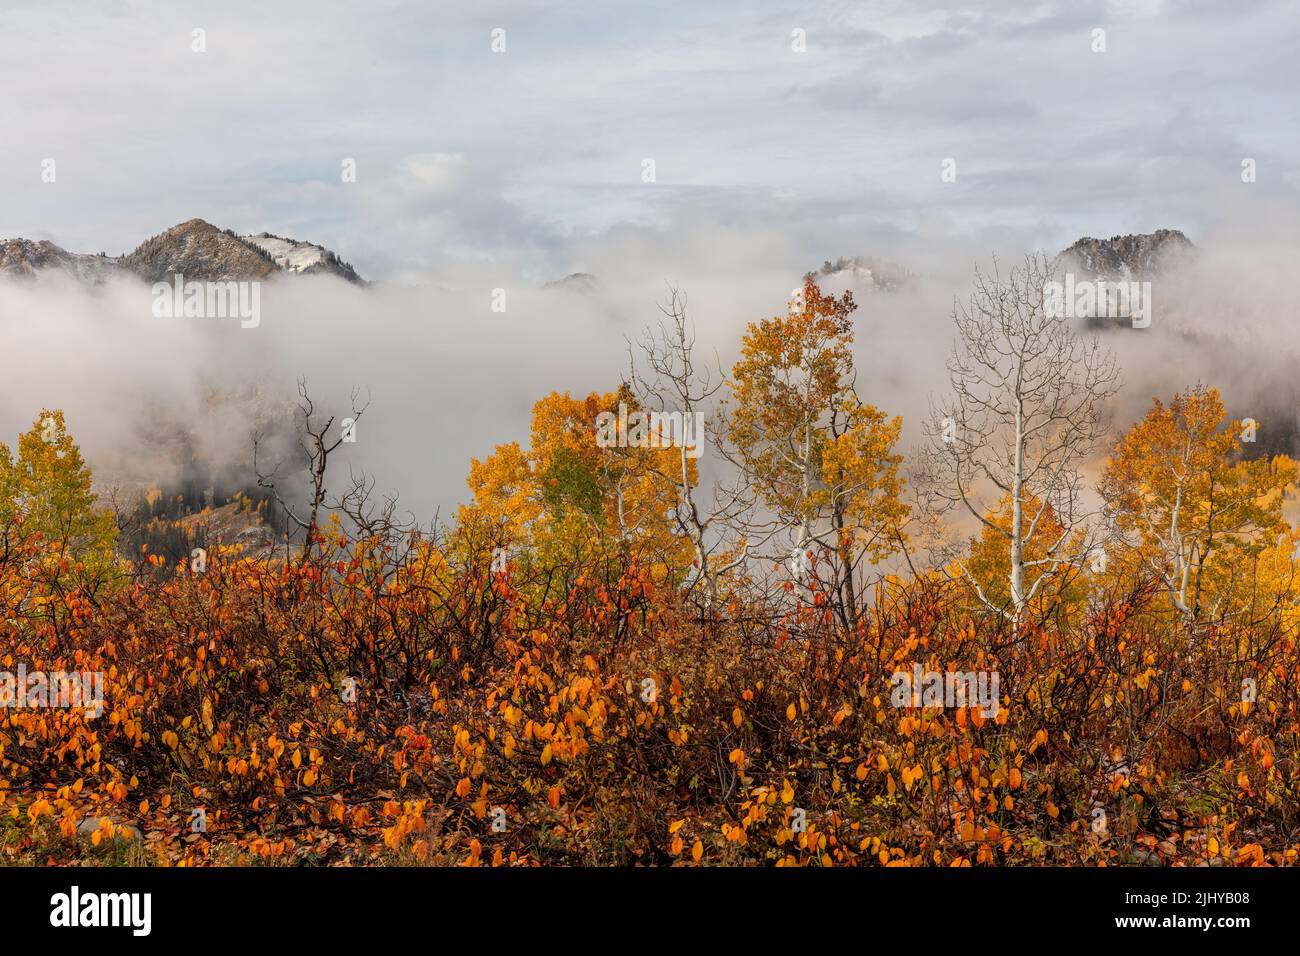 Fall foliage, Big Cottonwood Canyon, Wasatch Mountains, Utah Stock Photo